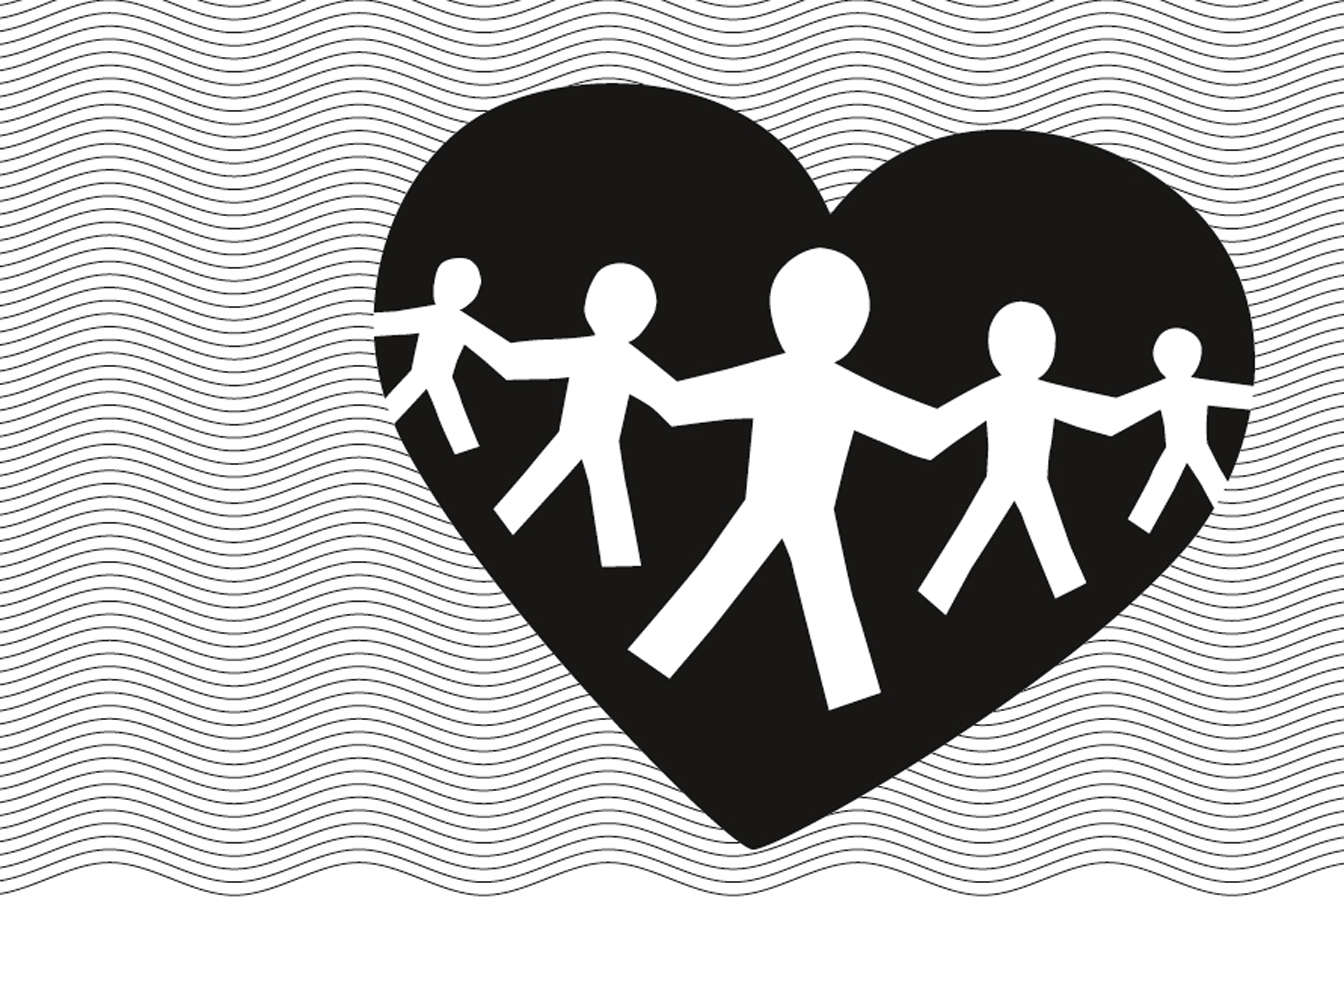 Logo Ehrenamtspreis der Stadt Datteln mit stilisierten Figuren in einem Herz, das auf angedeuteten Wellen liegt